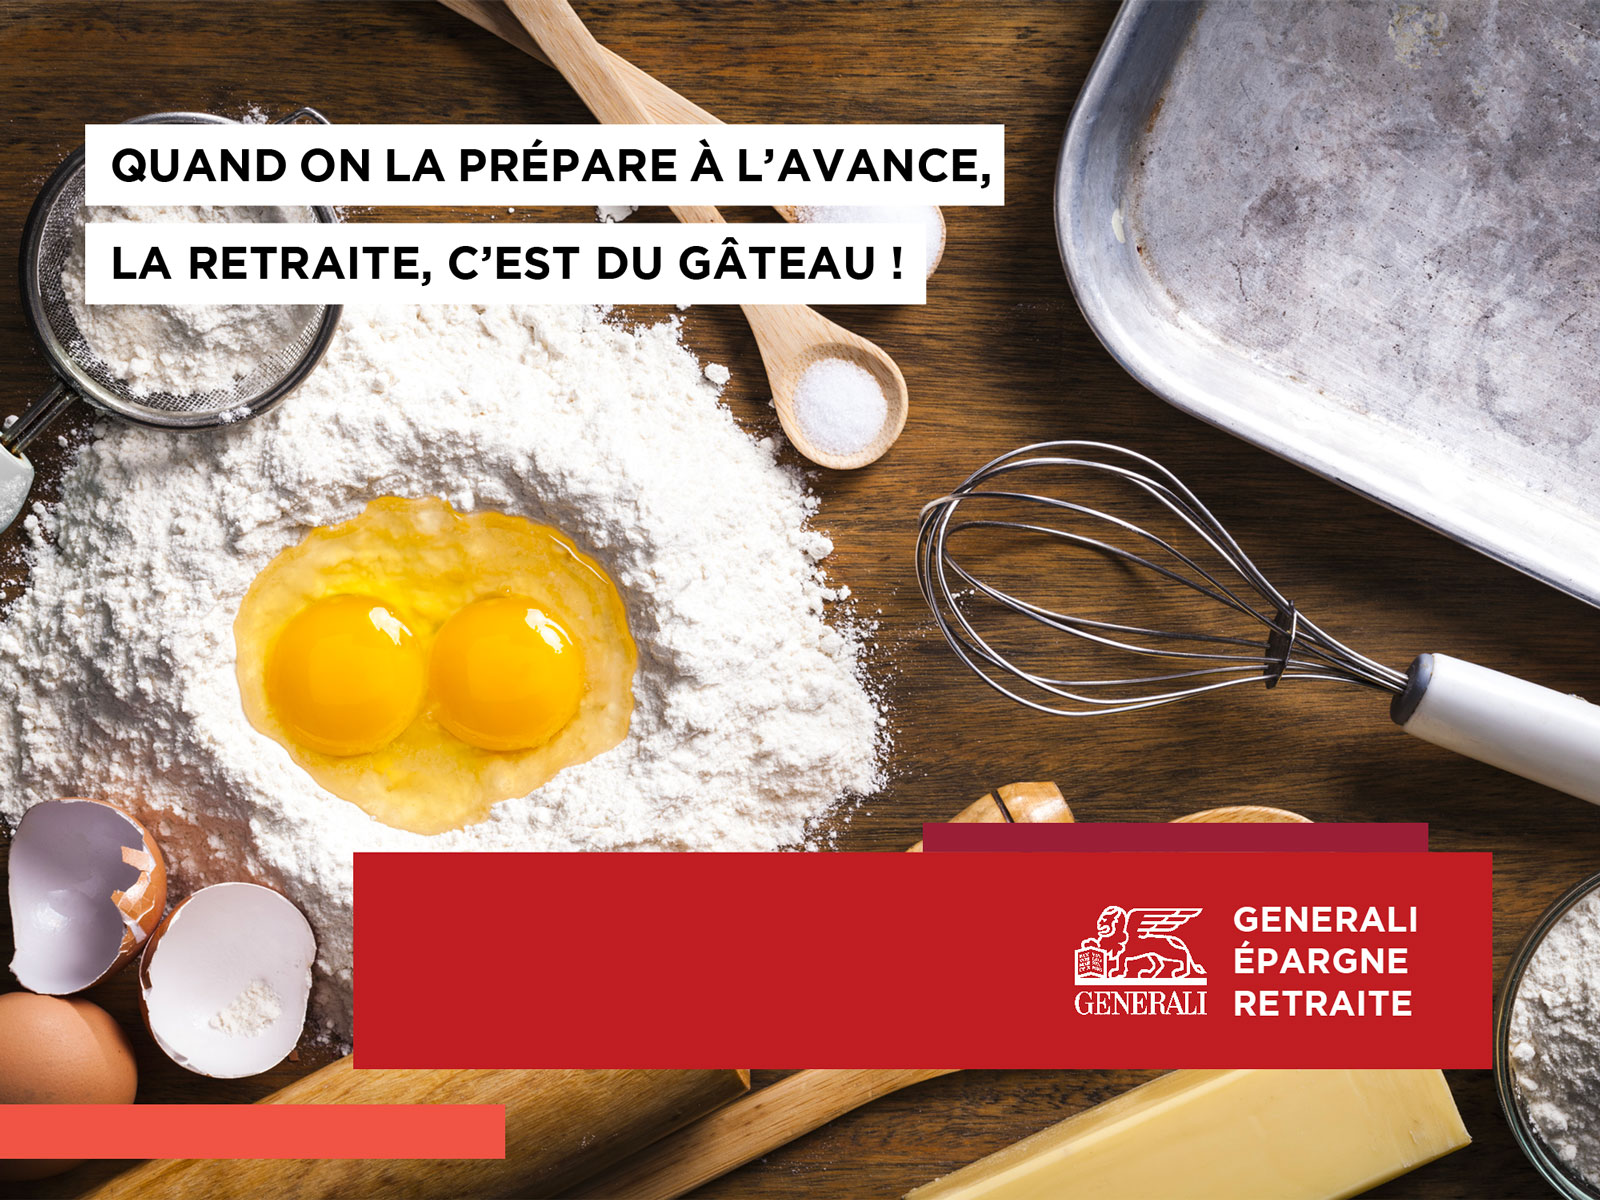 Agence Brigit pour Generali | Épargne retraite - Gâteau